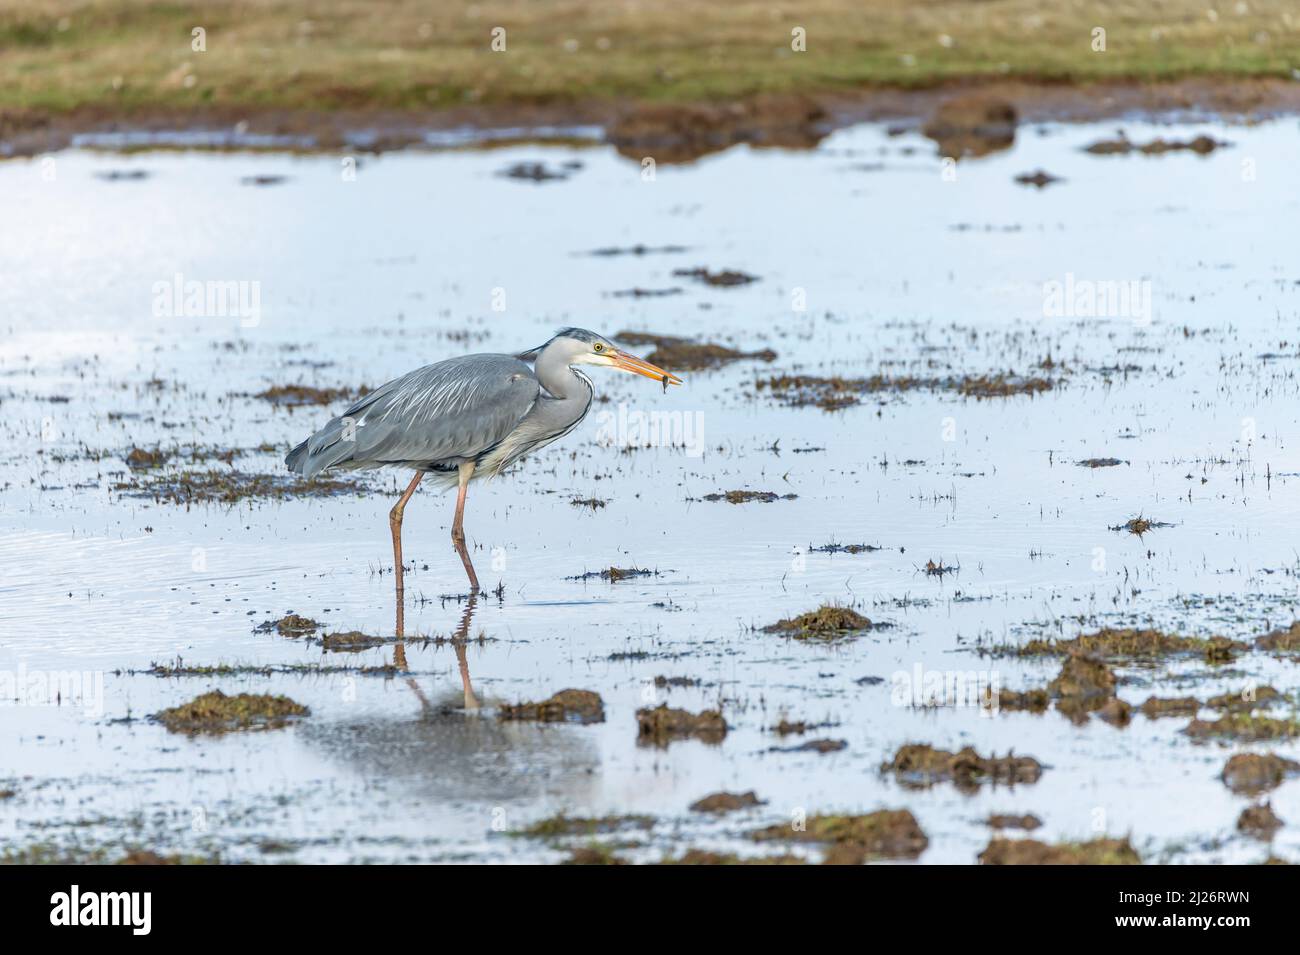 Un airone grigio, Ardea cinerea, in piedi in acque calme, alla ricerca di cibo. Fotografia di uccelli presa in Svezia nel mese di aprile. Sfondo naturale, spazio di copia. Foto Stock